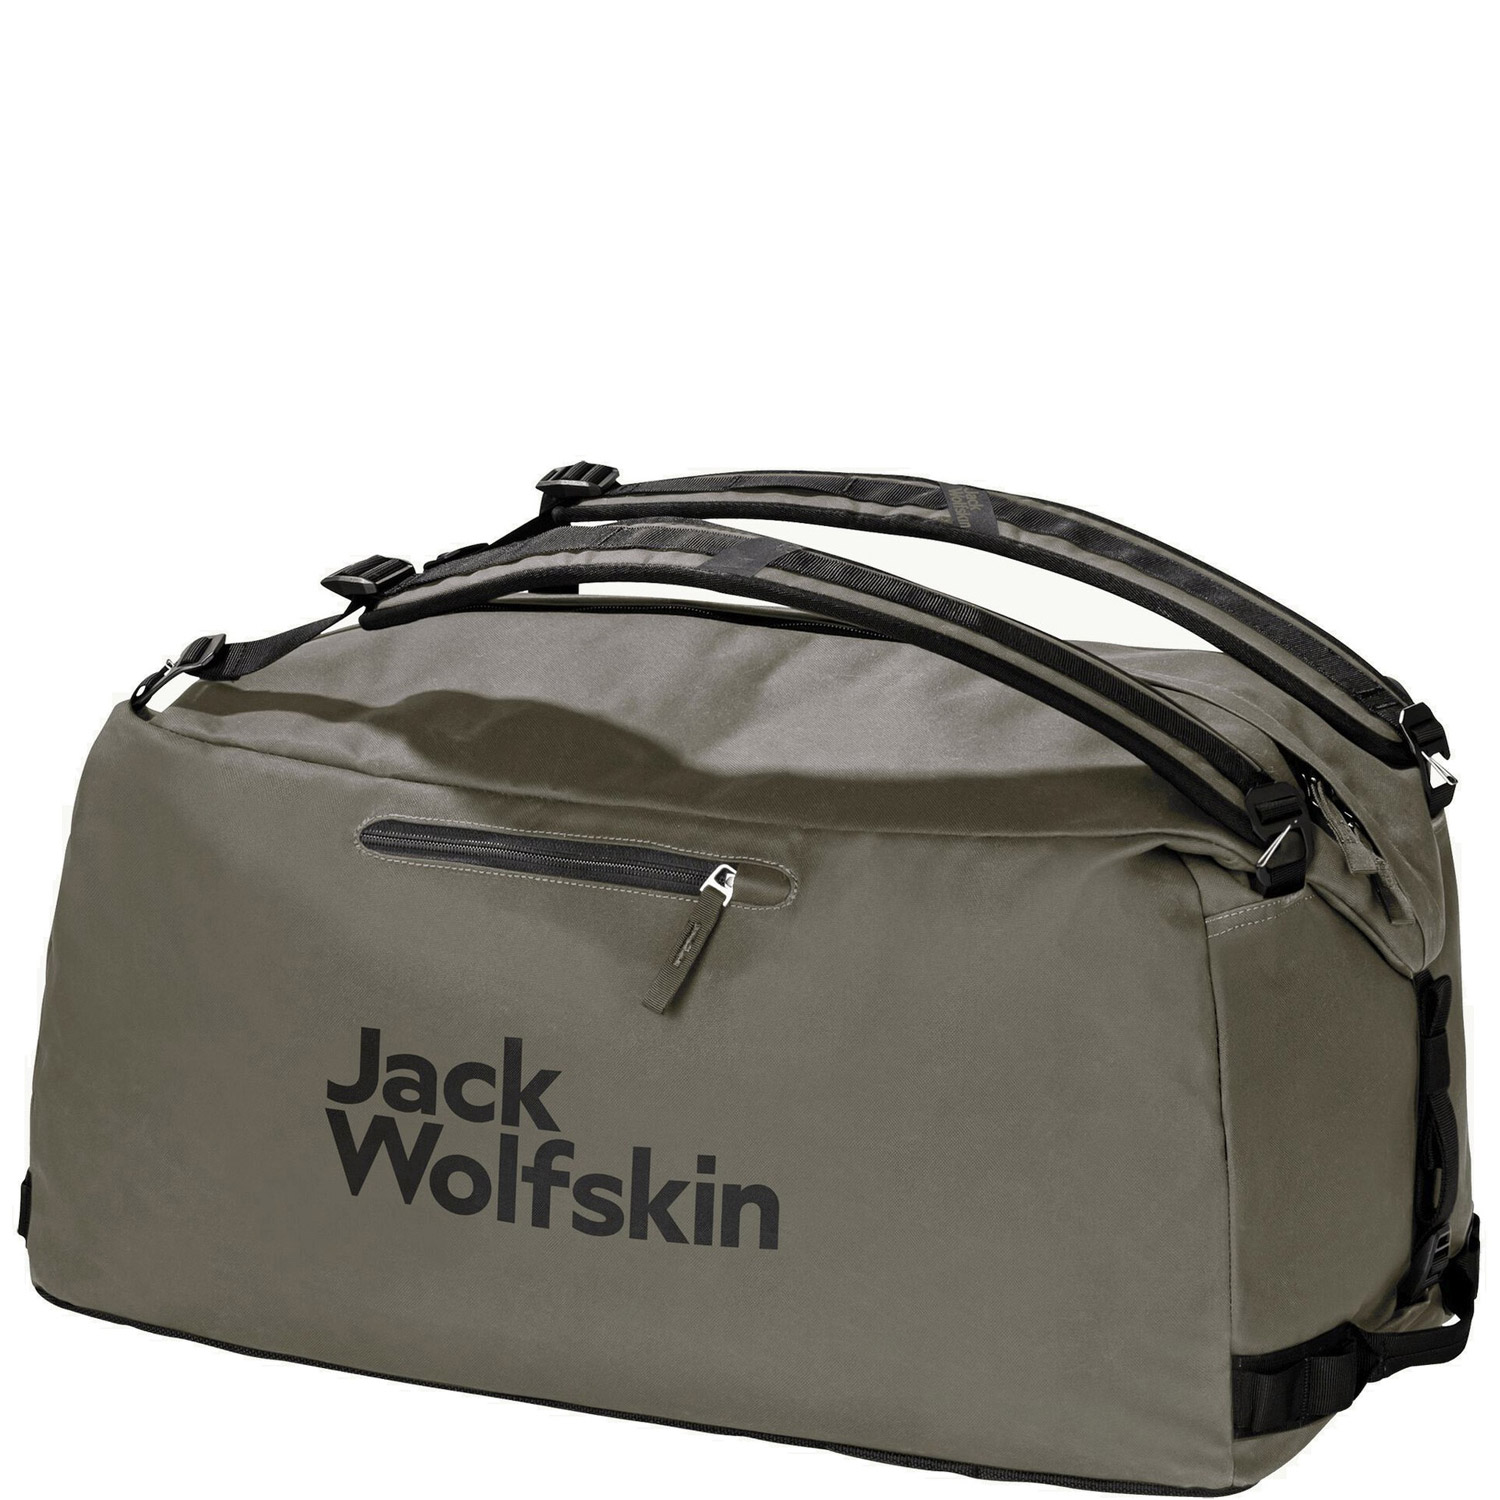 Jack Wolfskin Reisetasche/Rucksack Traveltopia Duffel 65 dusty olive